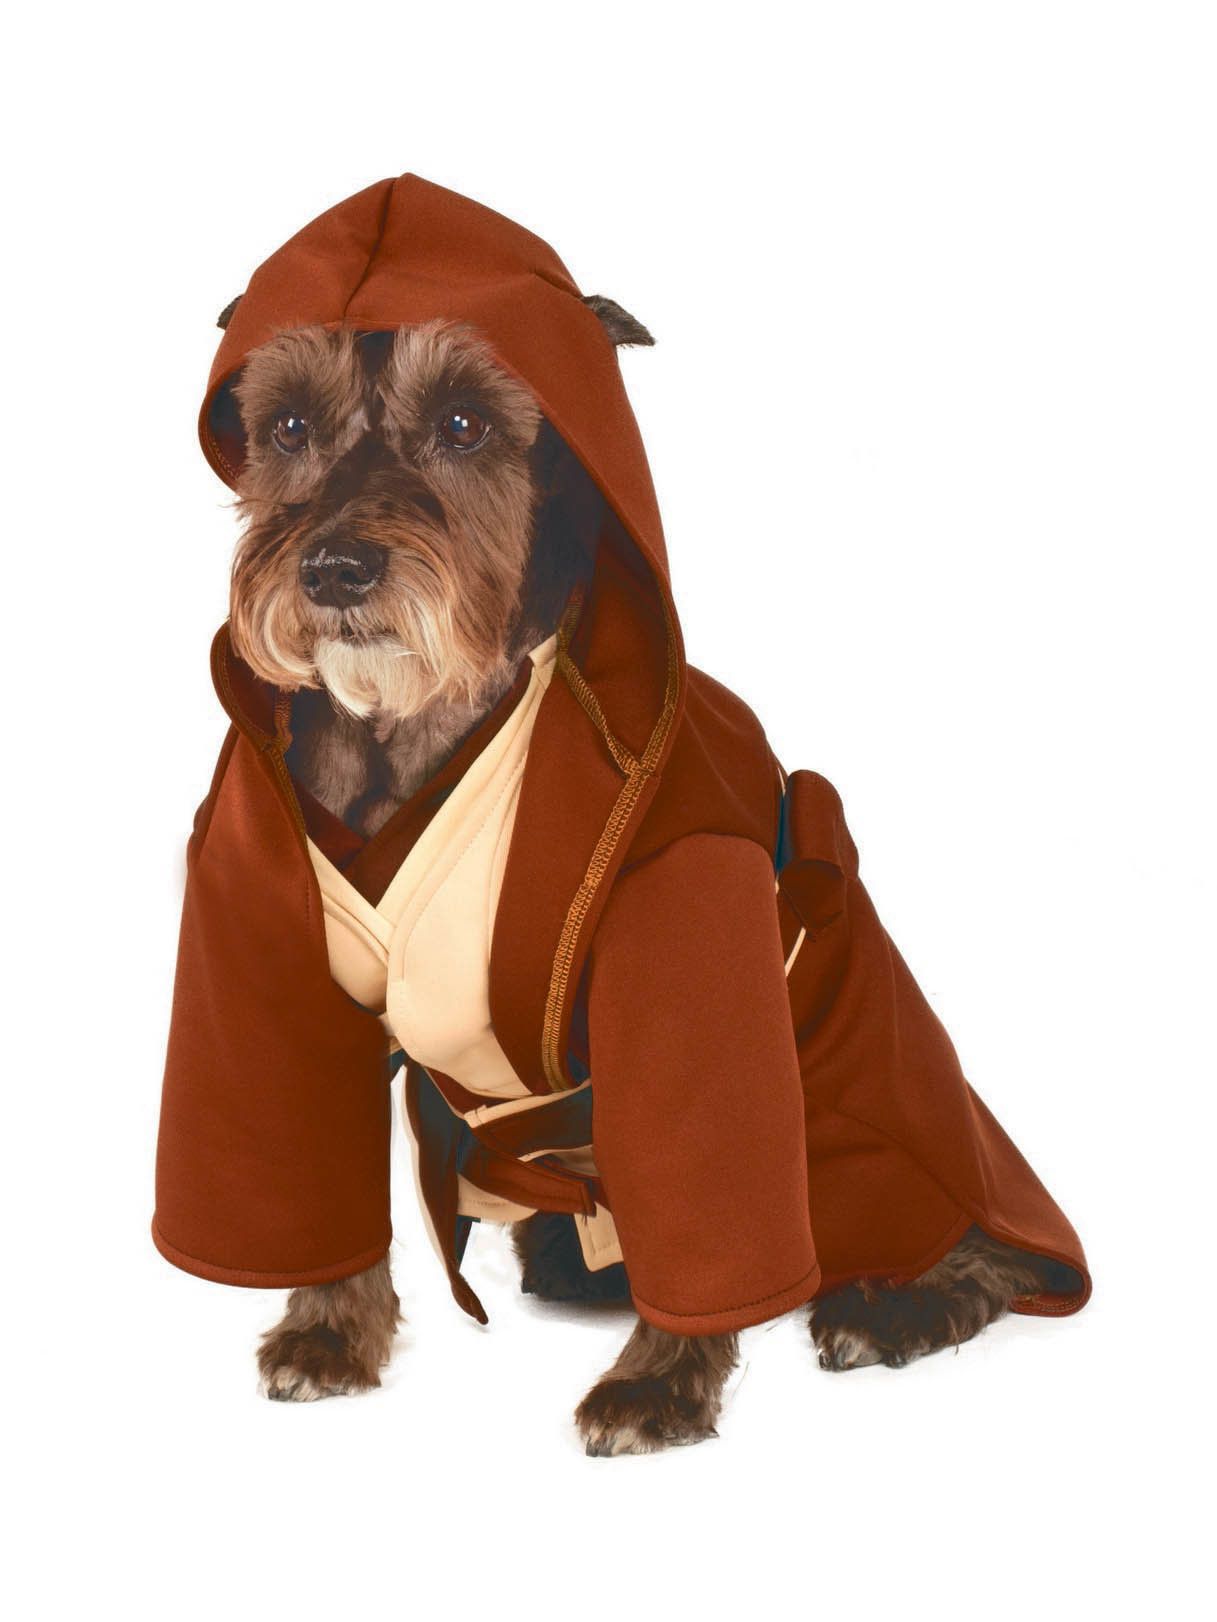 Pet's Classic Star Wars Jedi Robe - costumes.com